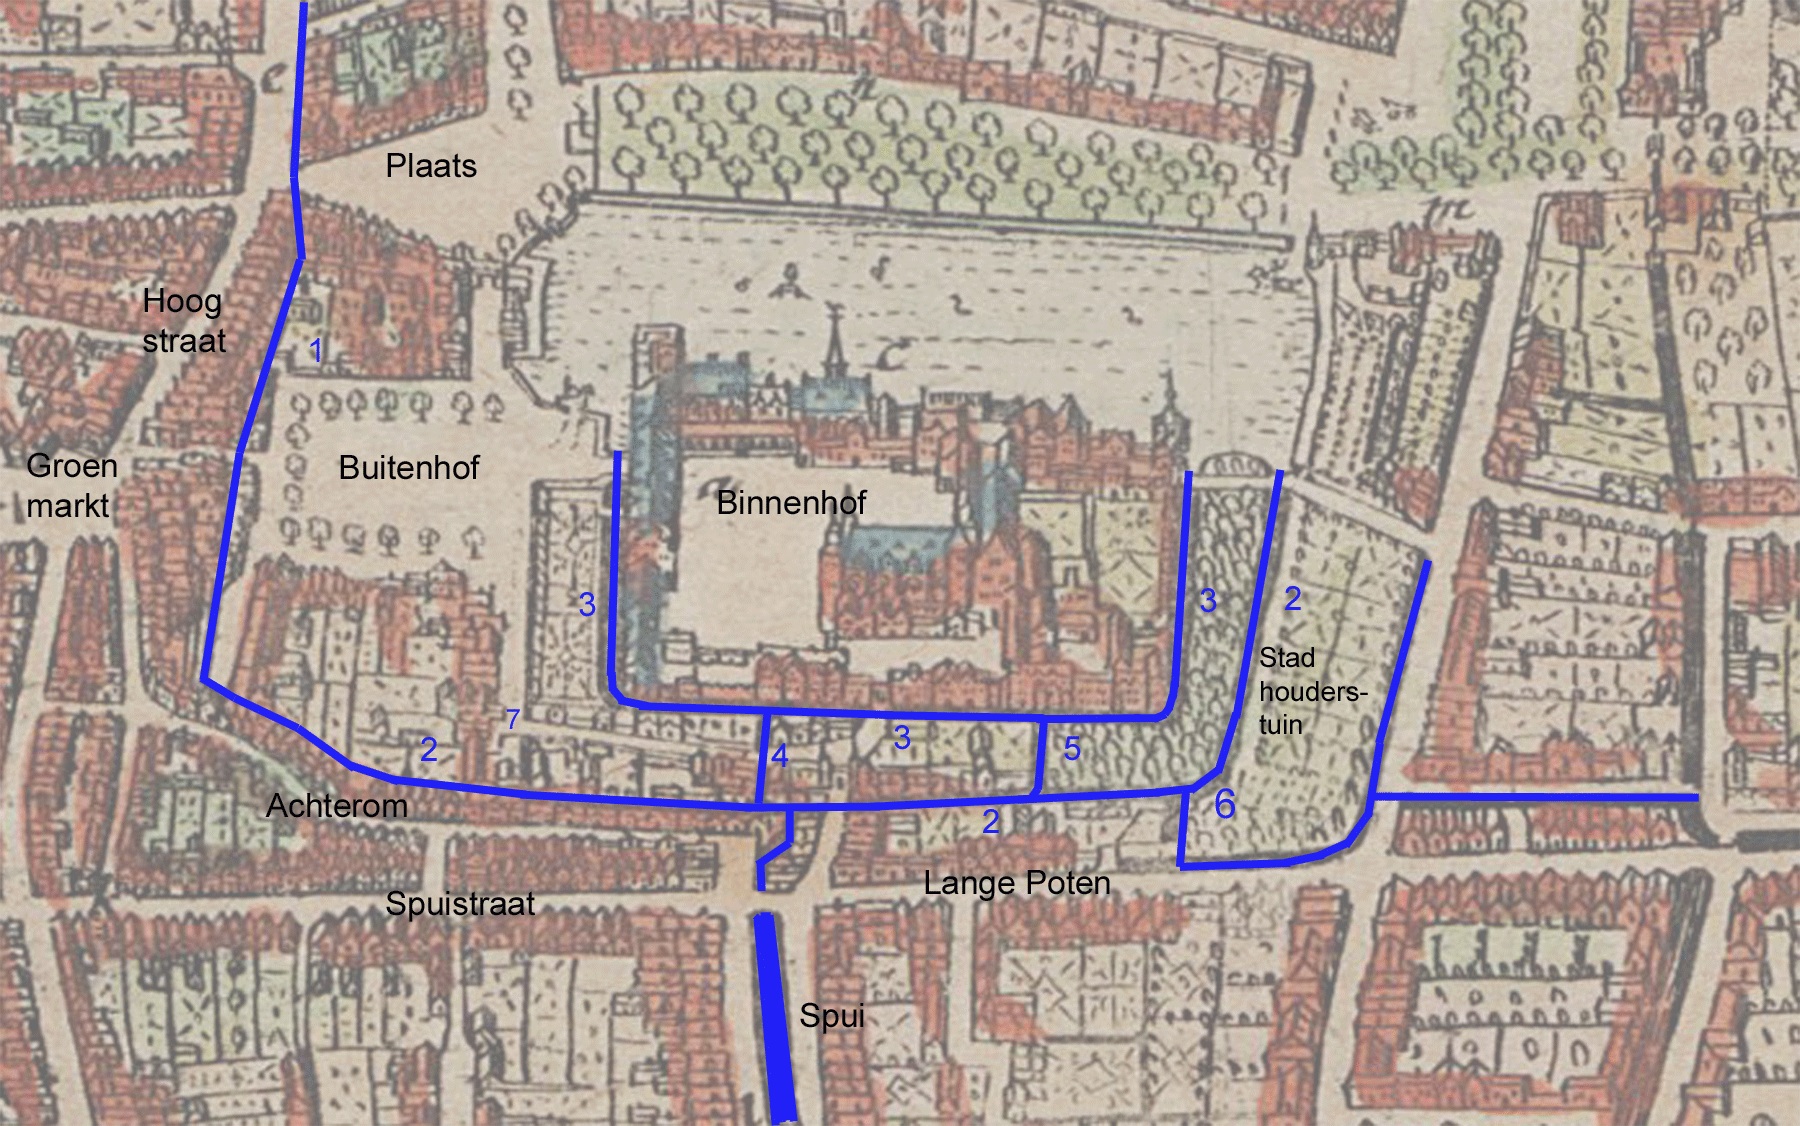 De grachten rond het Binnenhof tot ca. 1635